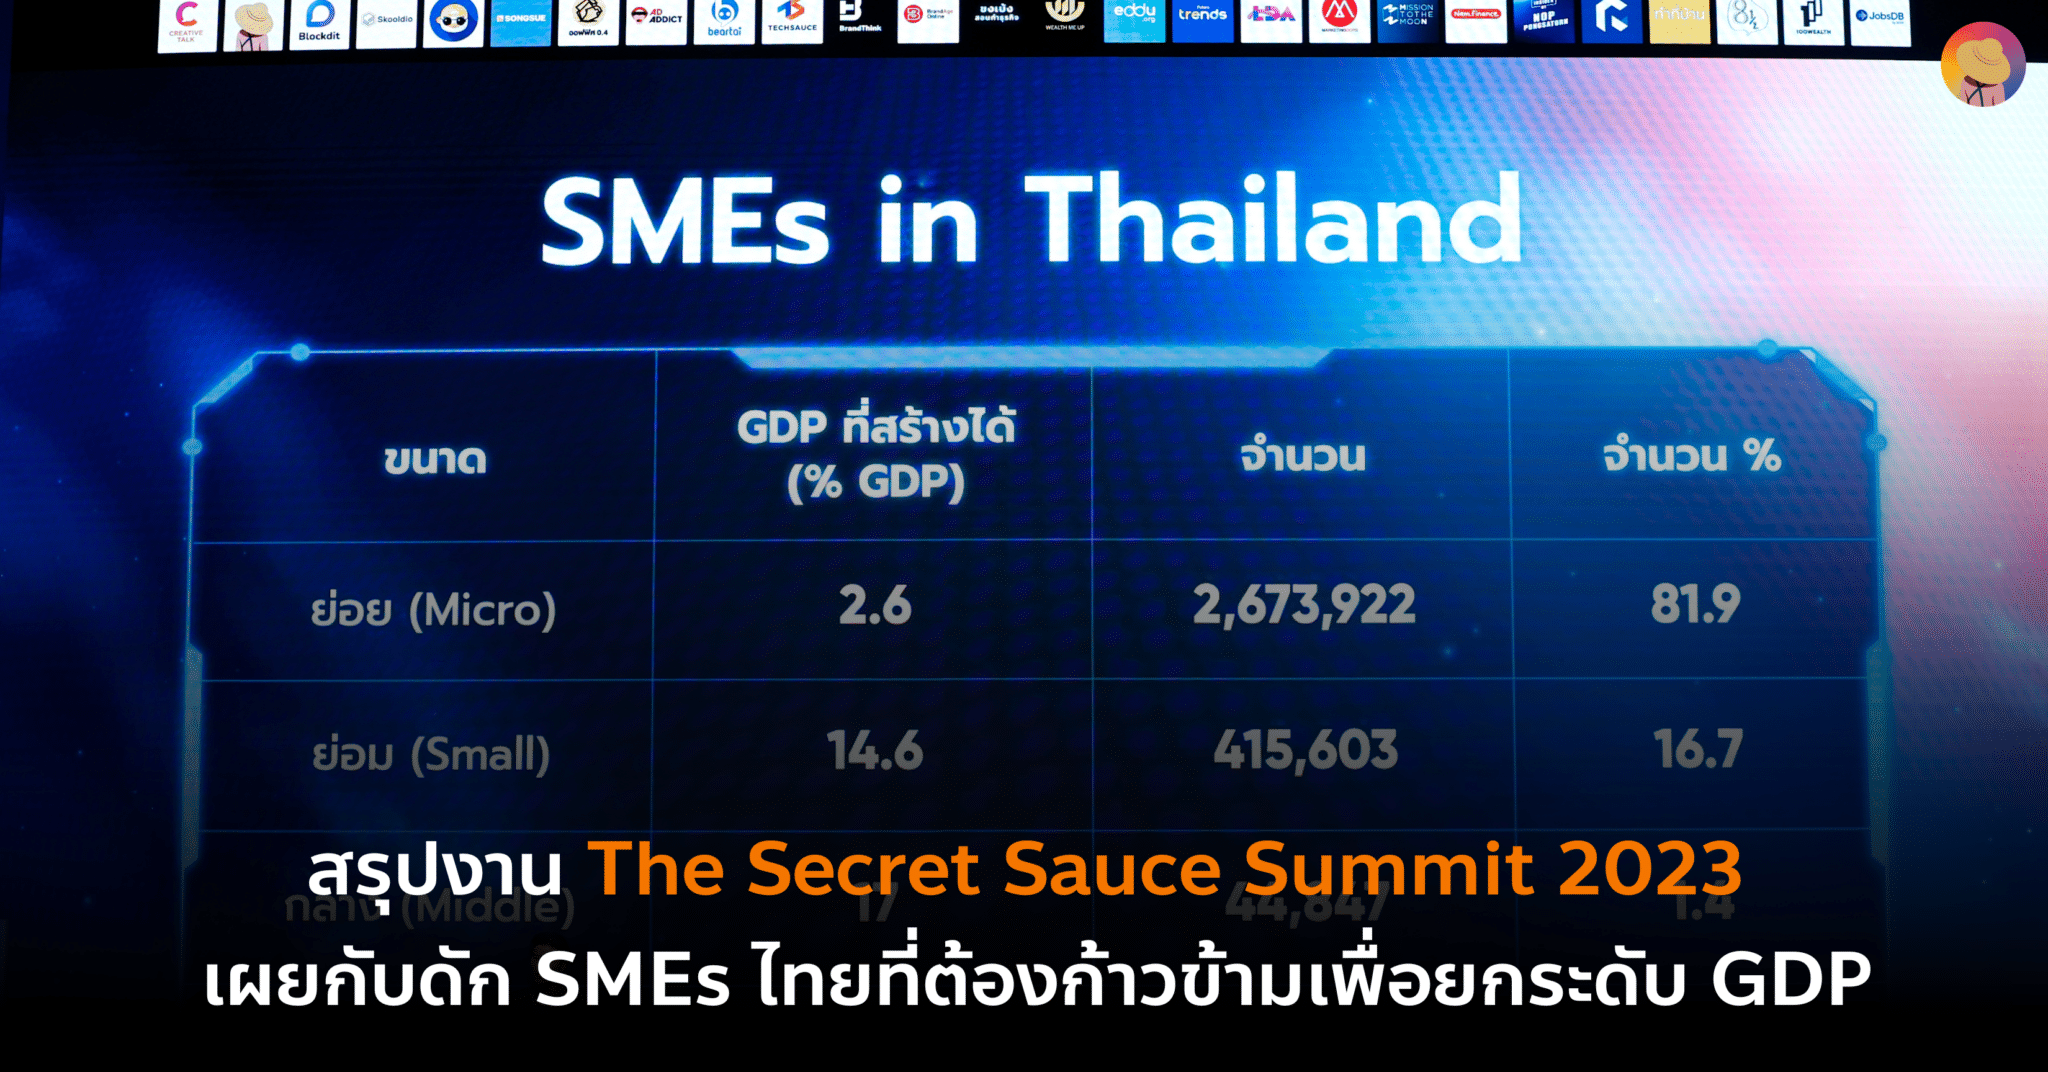 สรุปงาน The Secret Sauce Summit 2023 เผยกับดัก SMEs ไทยที่ต้องก้าวข้ามเพื่อยกระดับ GDP